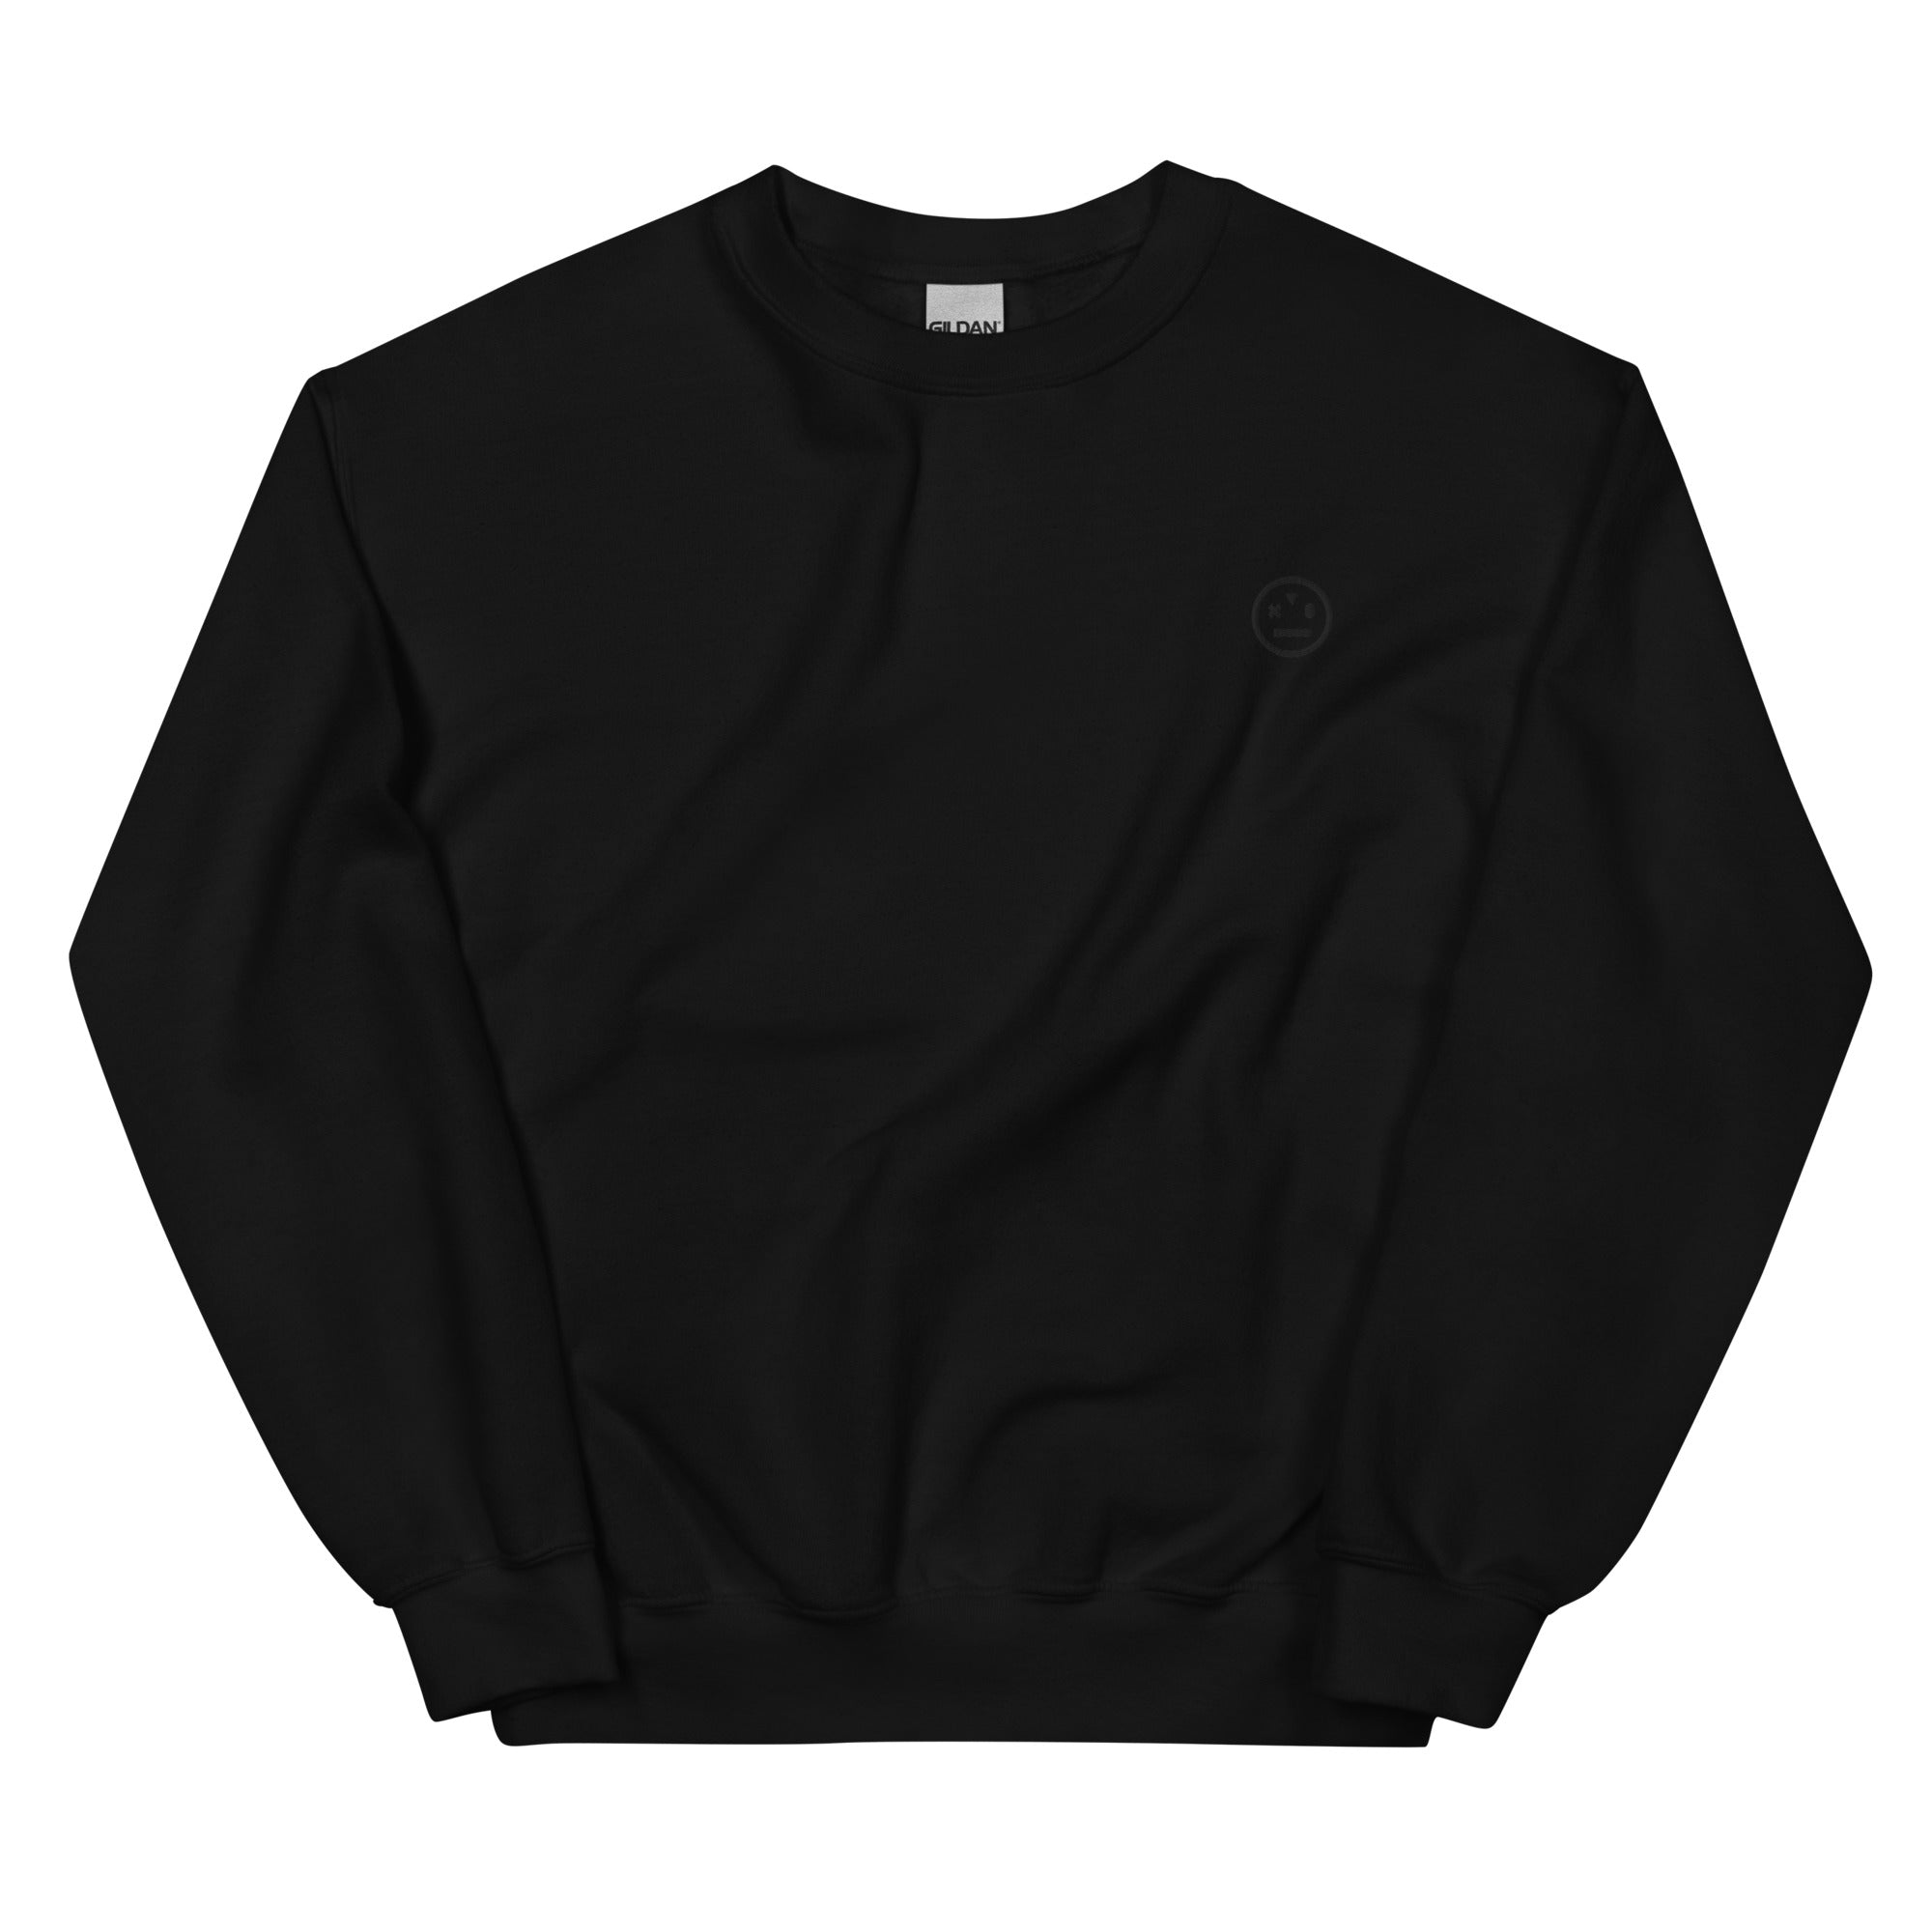 black on black stoned ape crewneck sweatshirt